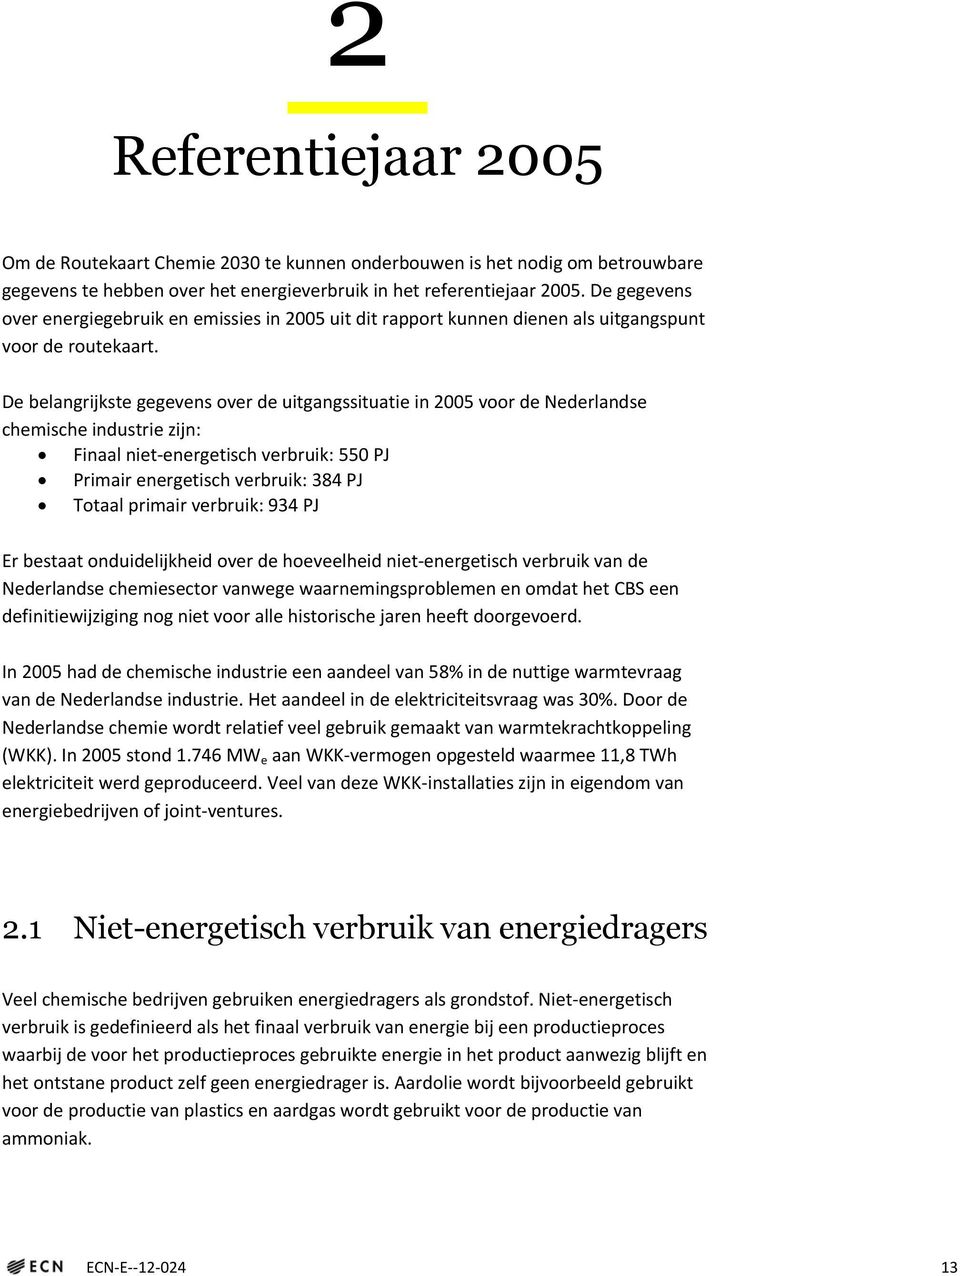 De belangrijkste gegevens over de uitgangssituatie in 2005 voor de Nederlandse chemische industrie zijn: Finaal niet-energetisch verbruik: 550 PJ Primair energetisch verbruik: 384 PJ Totaal primair